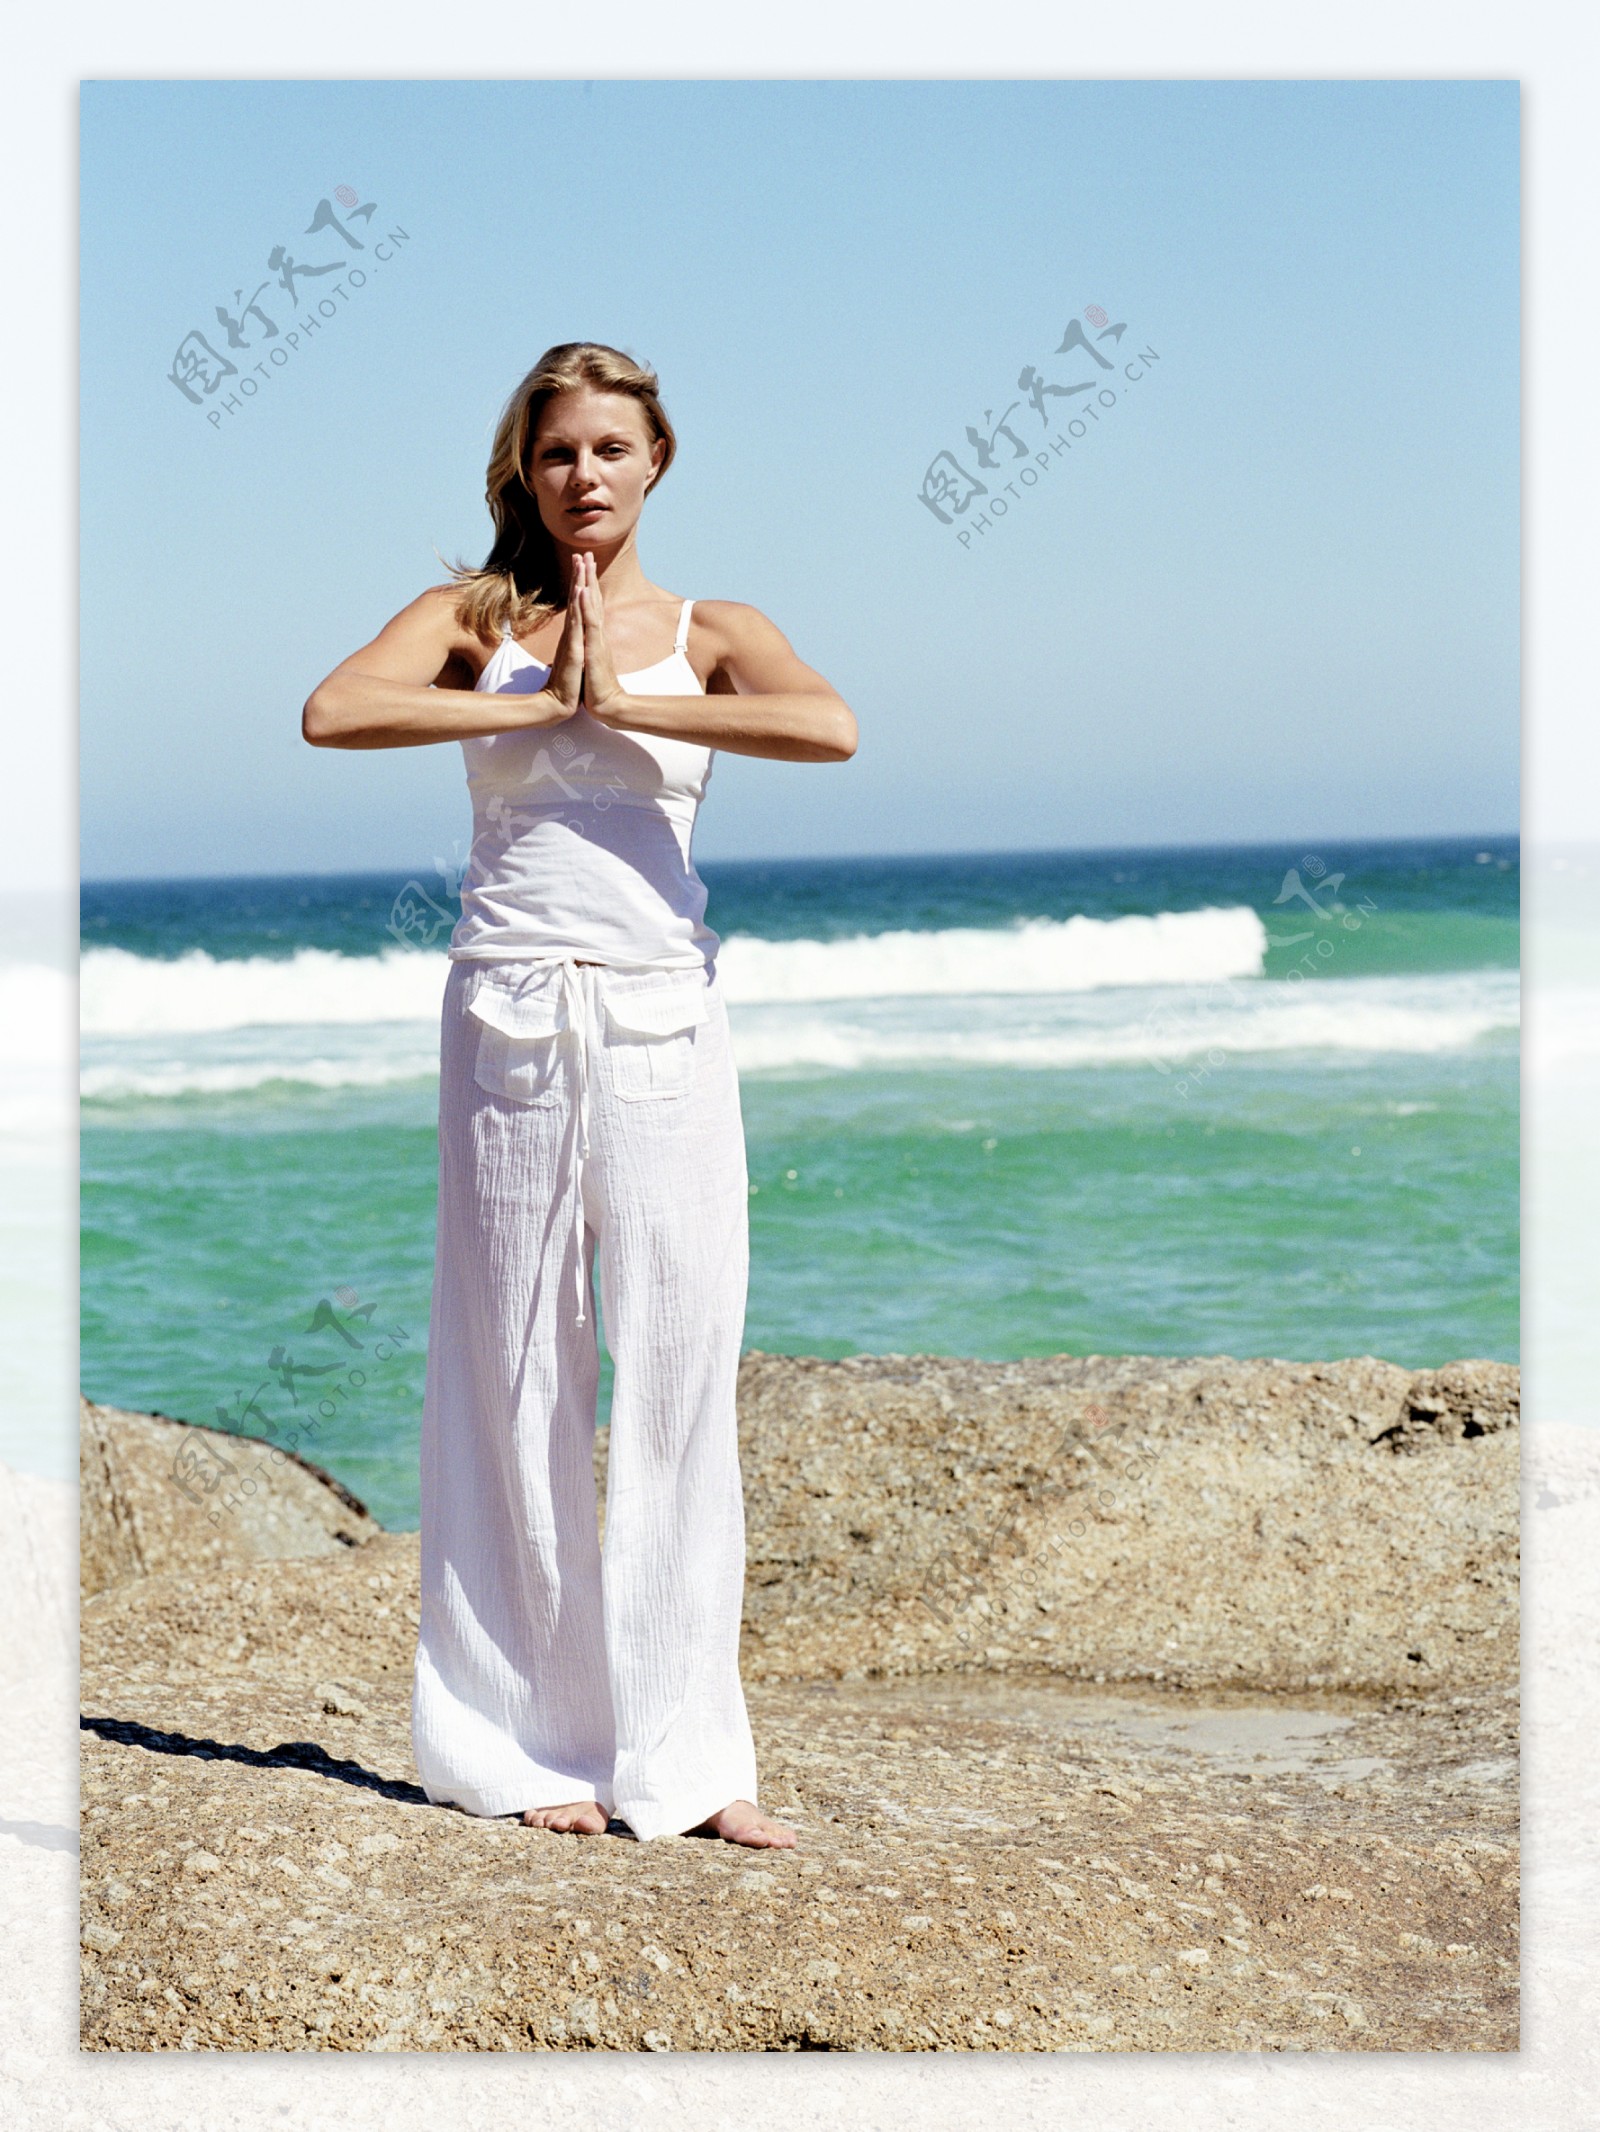 海边练瑜珈的美女图片